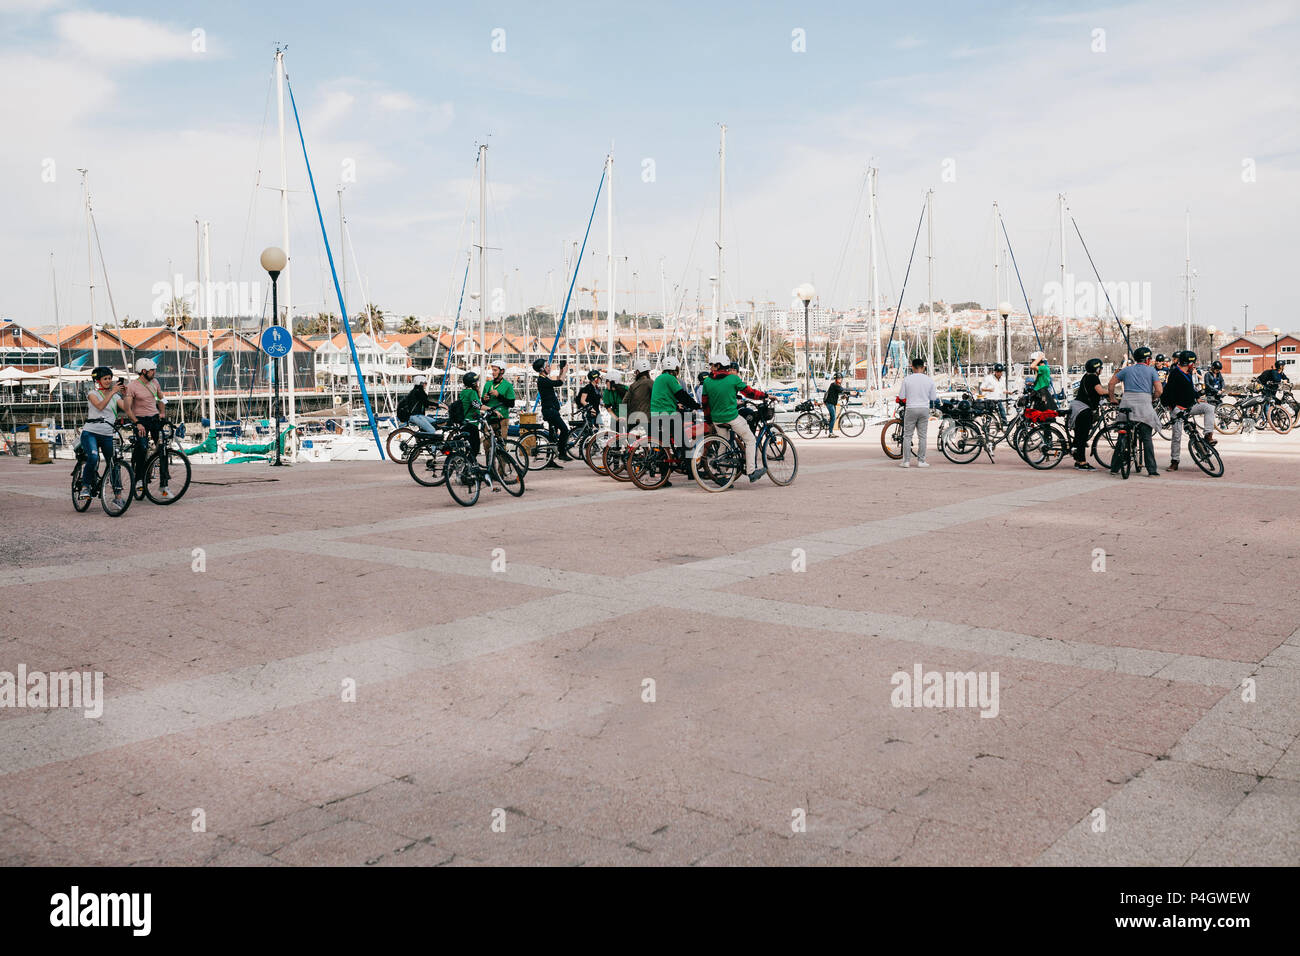 Lisbonne, juin 18, 2018 : un groupe de touristes sur les bicyclettes ou les athlètes admirer la vue magnifique sur la ville au bord de l'eau, dans la région de Belem Banque D'Images